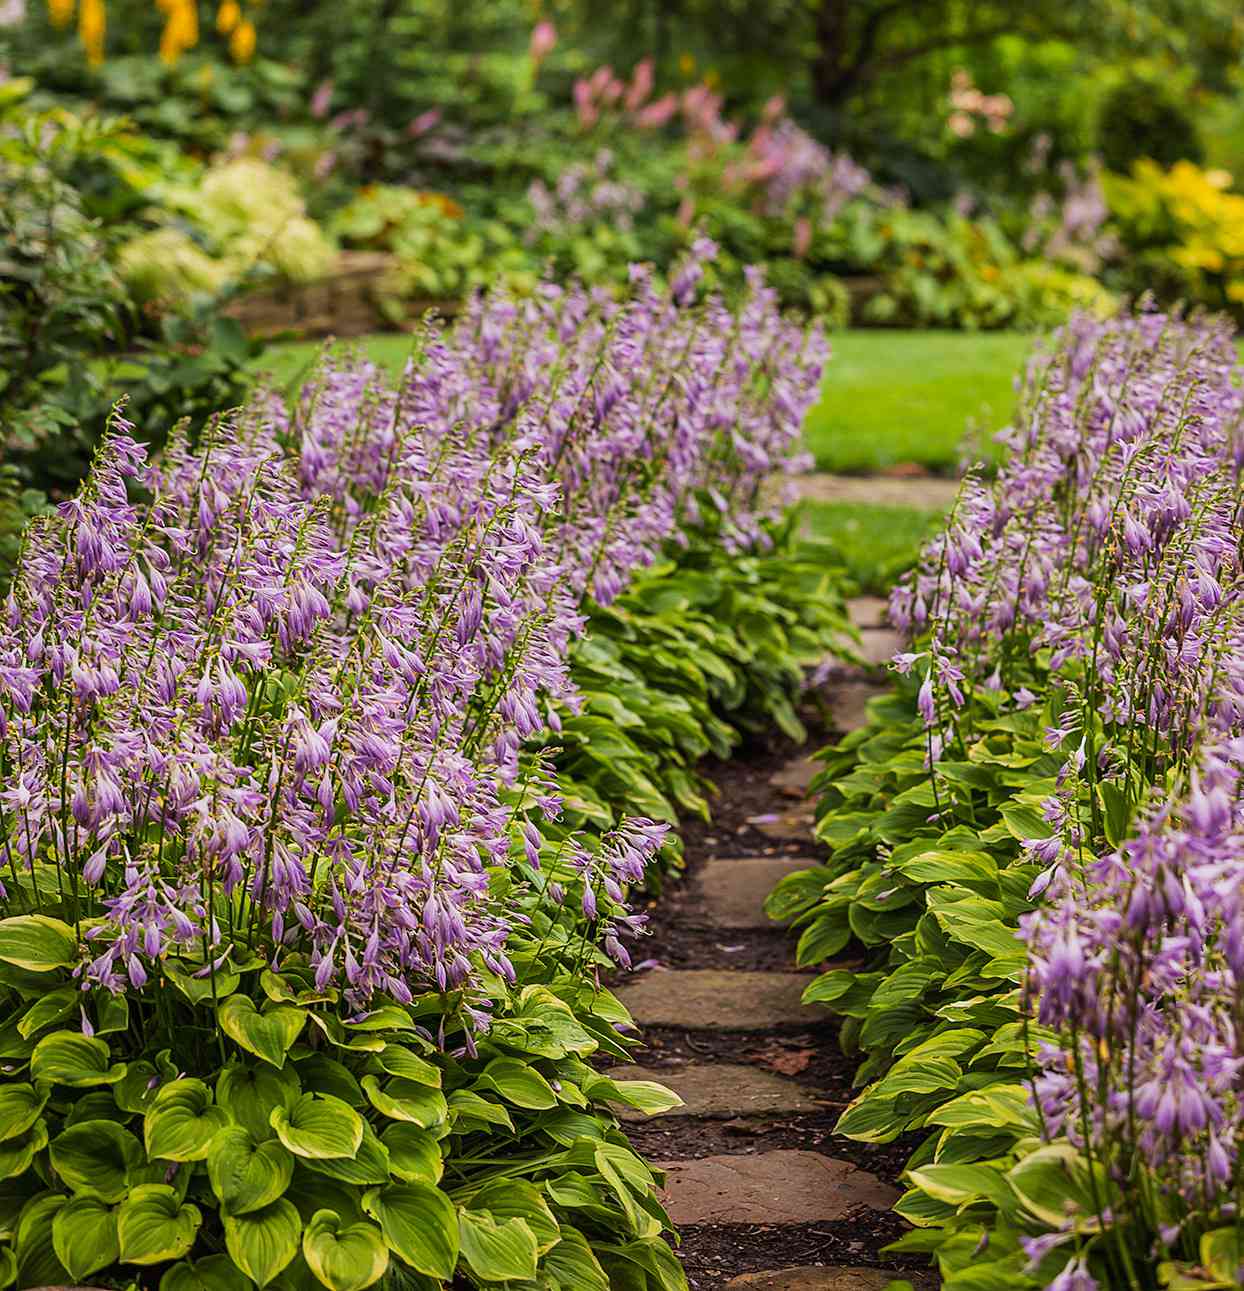 purple flowering hostas lining walkway in garden